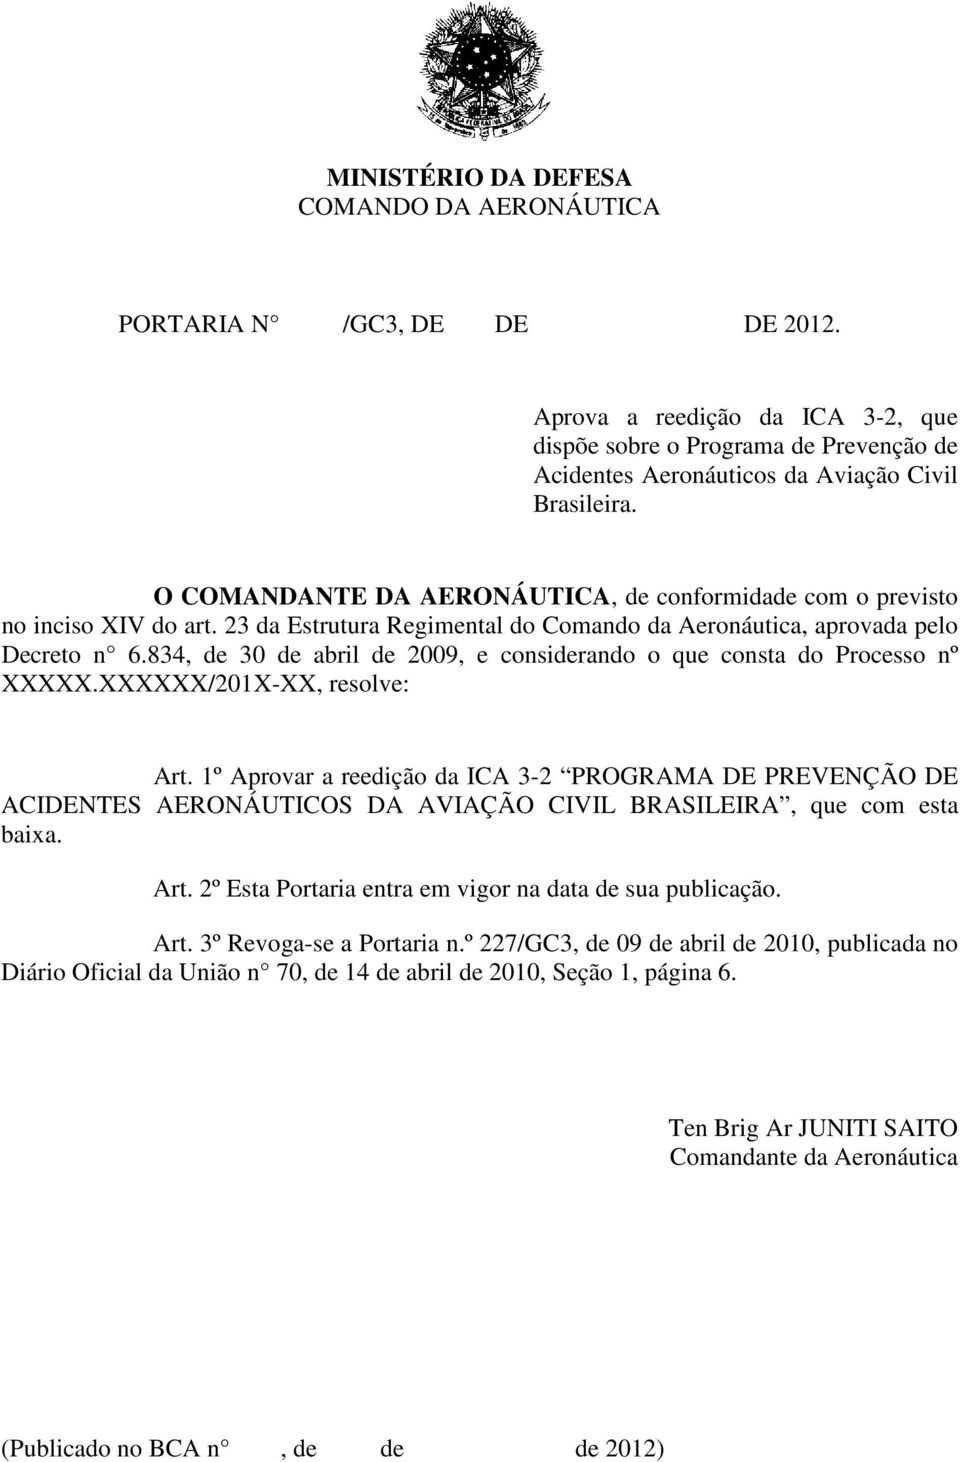 O COMANDANTE DA AERONÁUTICA, de conformidade com o previsto no inciso XIV do art. 23 da Estrutura Regimental do Comando da Aeronáutica, aprovada pelo Decreto n 6.